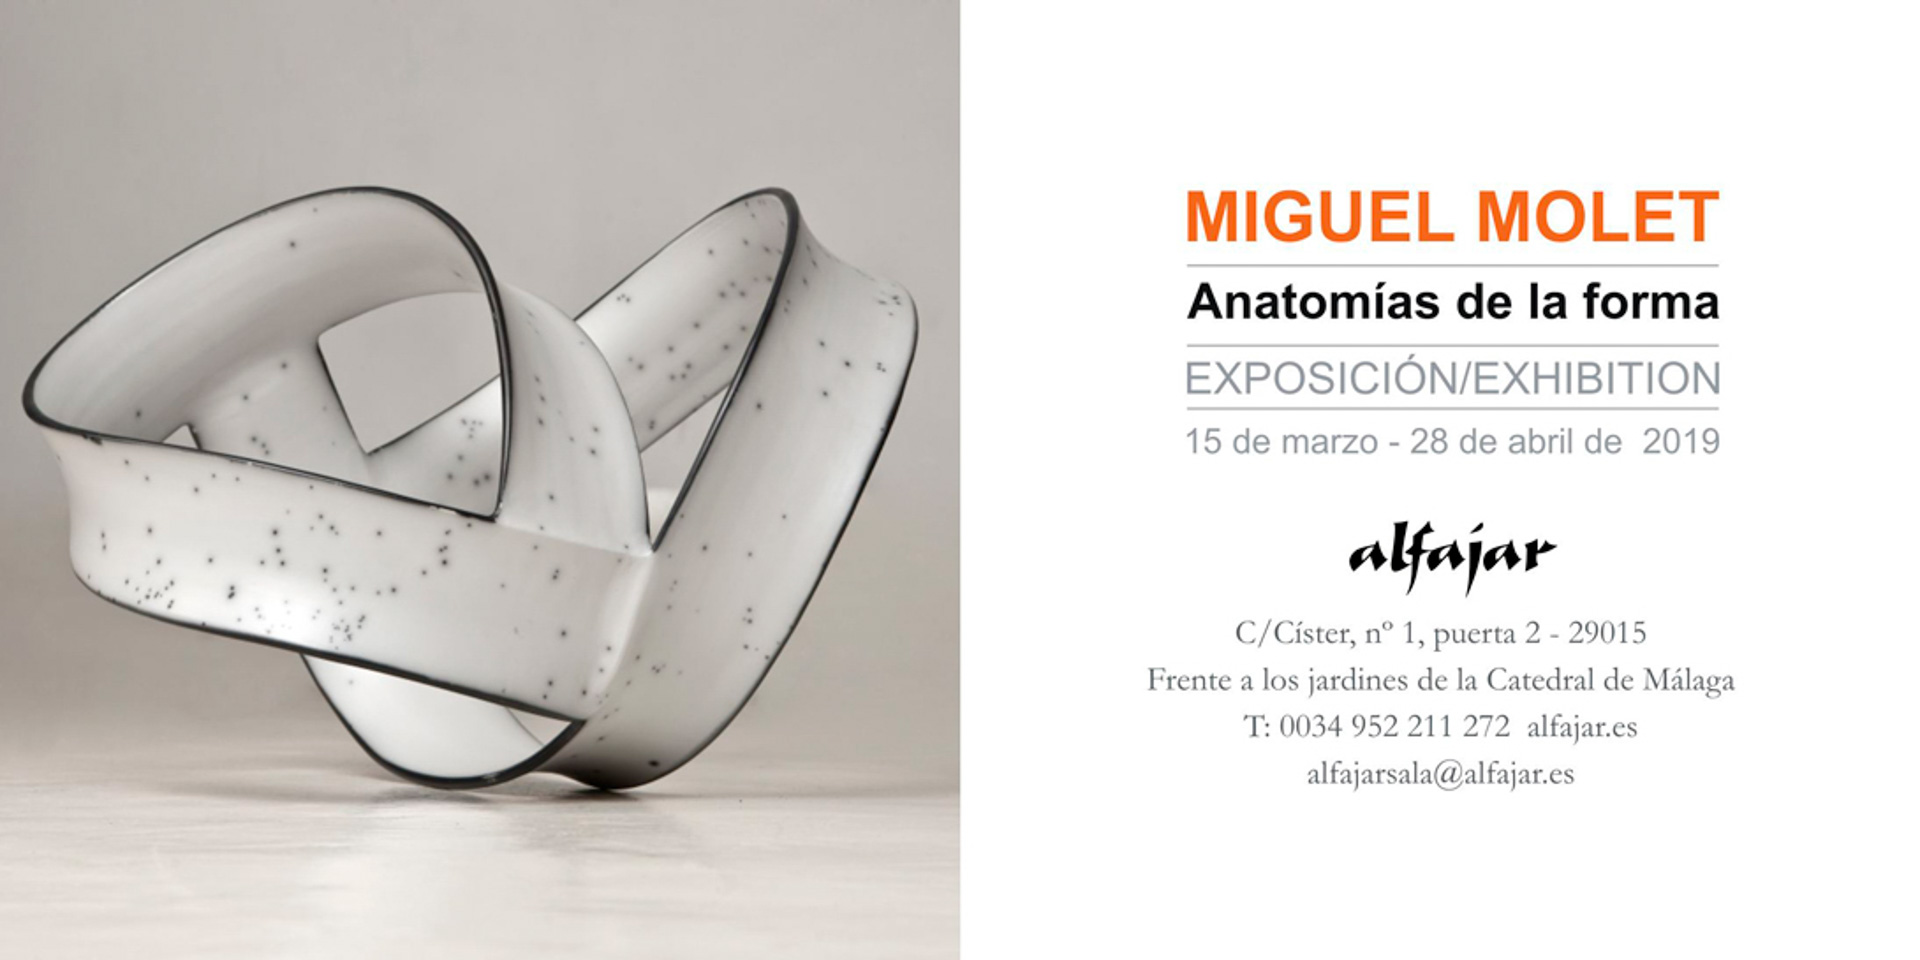 Miguel Molet: Anatomías de la forma